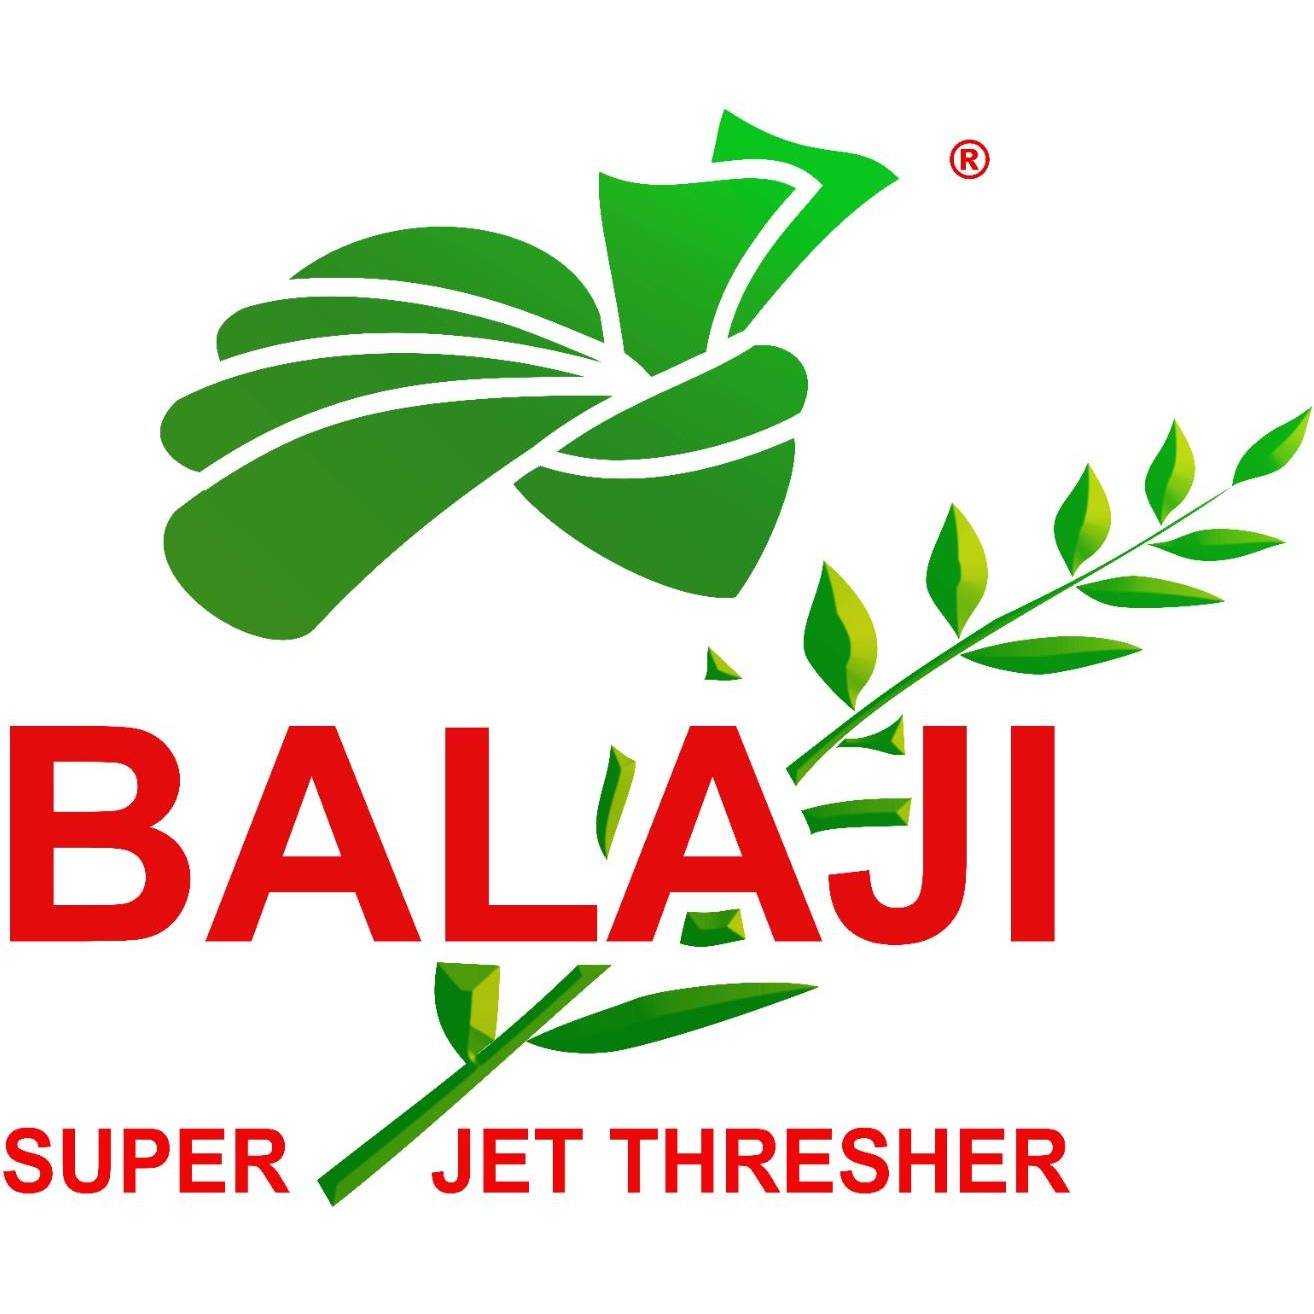 Balaji Super Jet Thresher